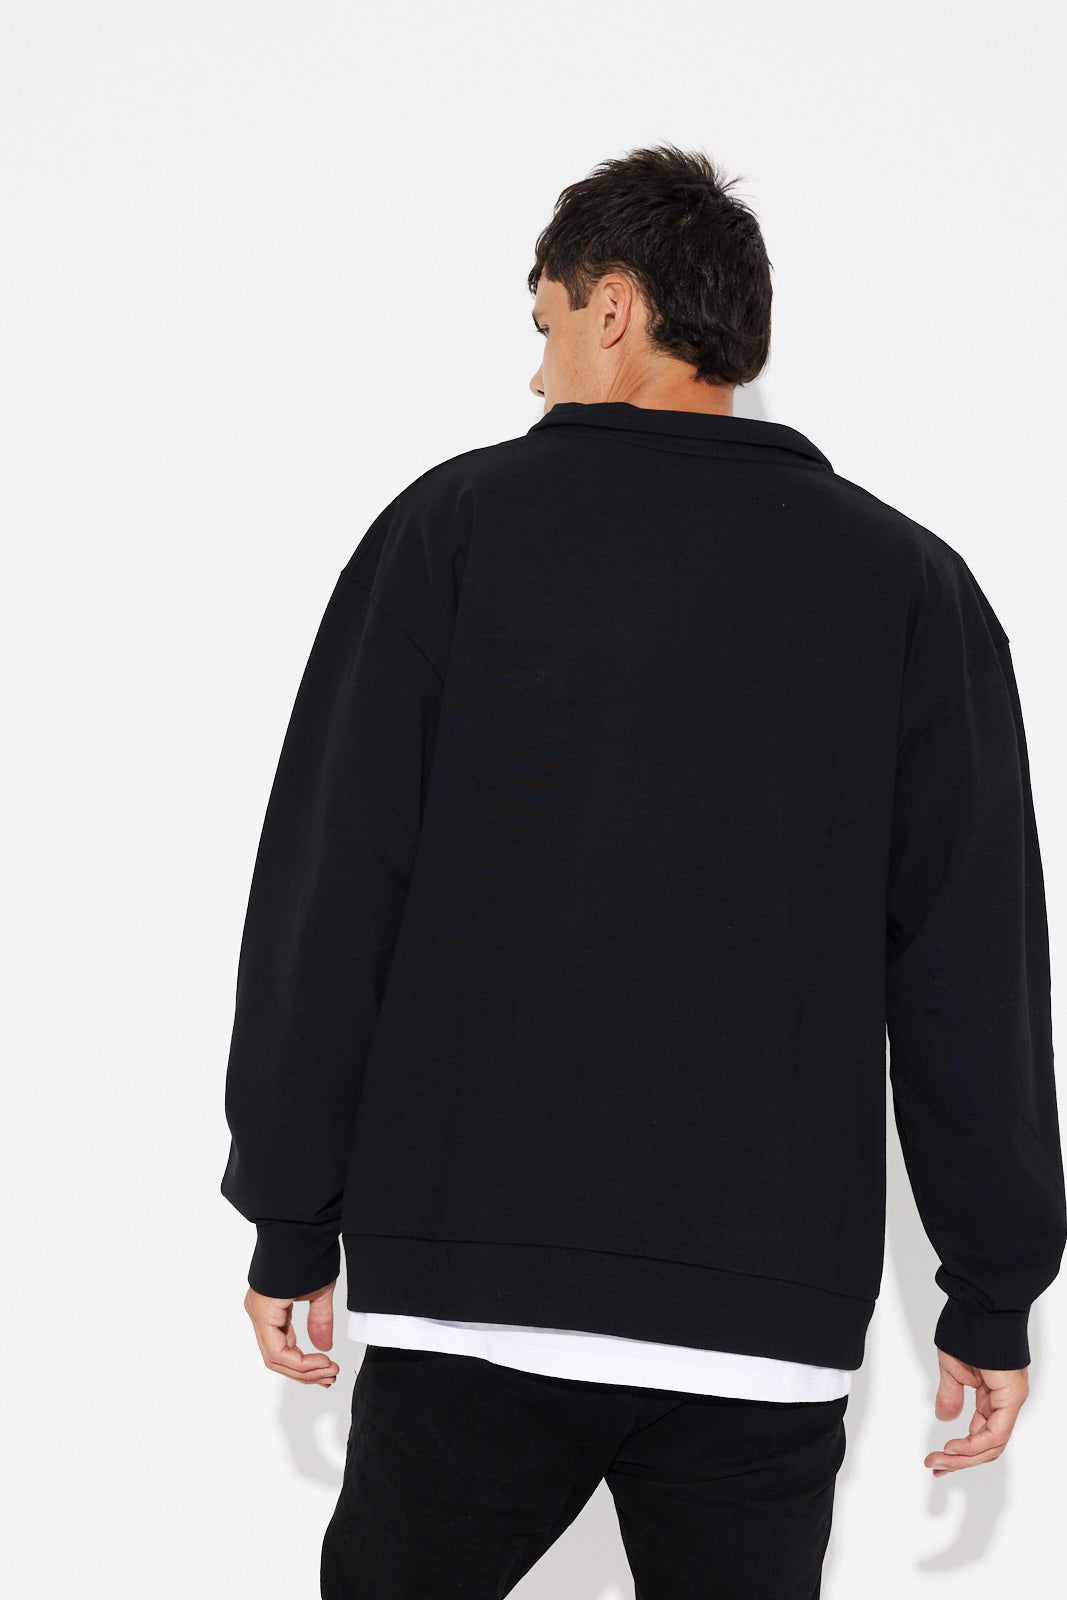 Damon Sweater Black - SALE